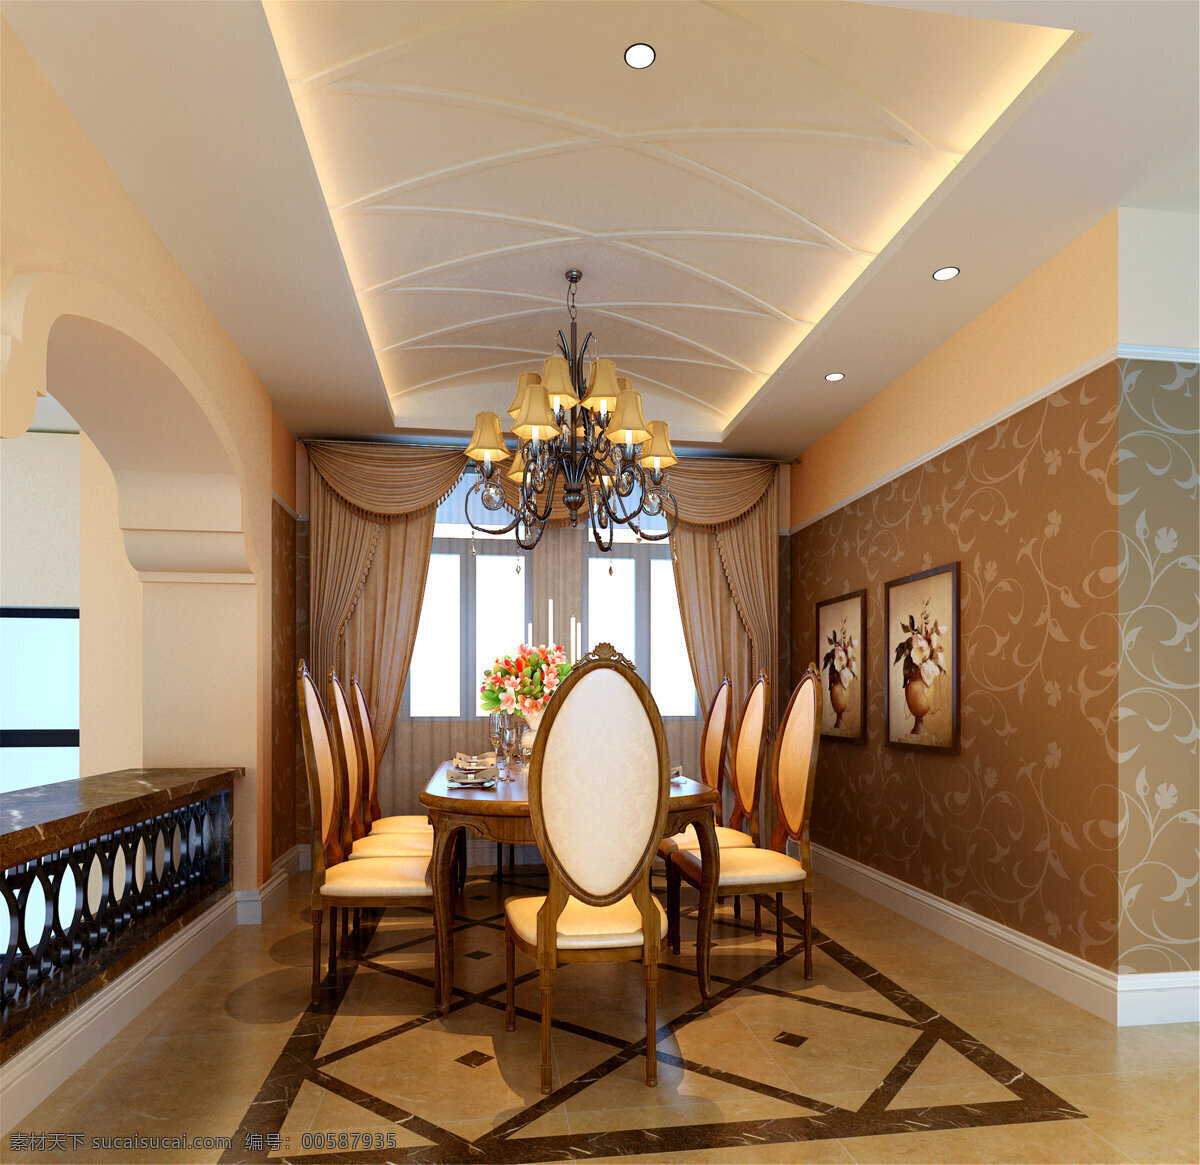 丰泰 尚 峰 桃园 地中海 客厅 模型 灯具模型 家居家具 沙发茶几 时尚客厅 室内设计 客厅模型 棕色